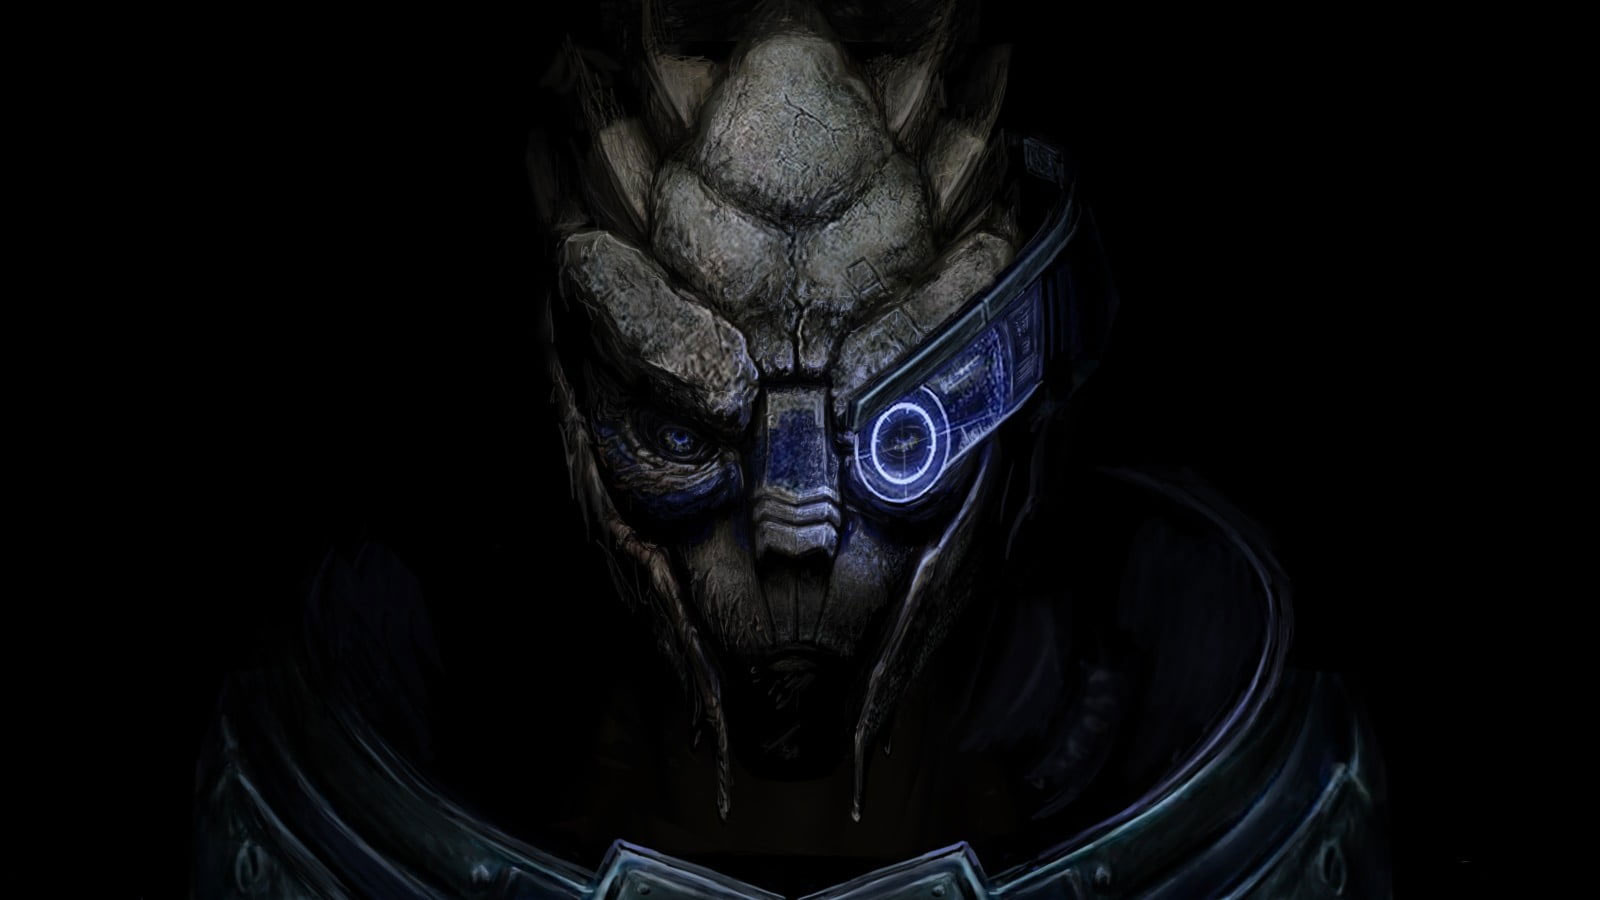 Wallpaper Video Game Wallpaper, Mass Effect